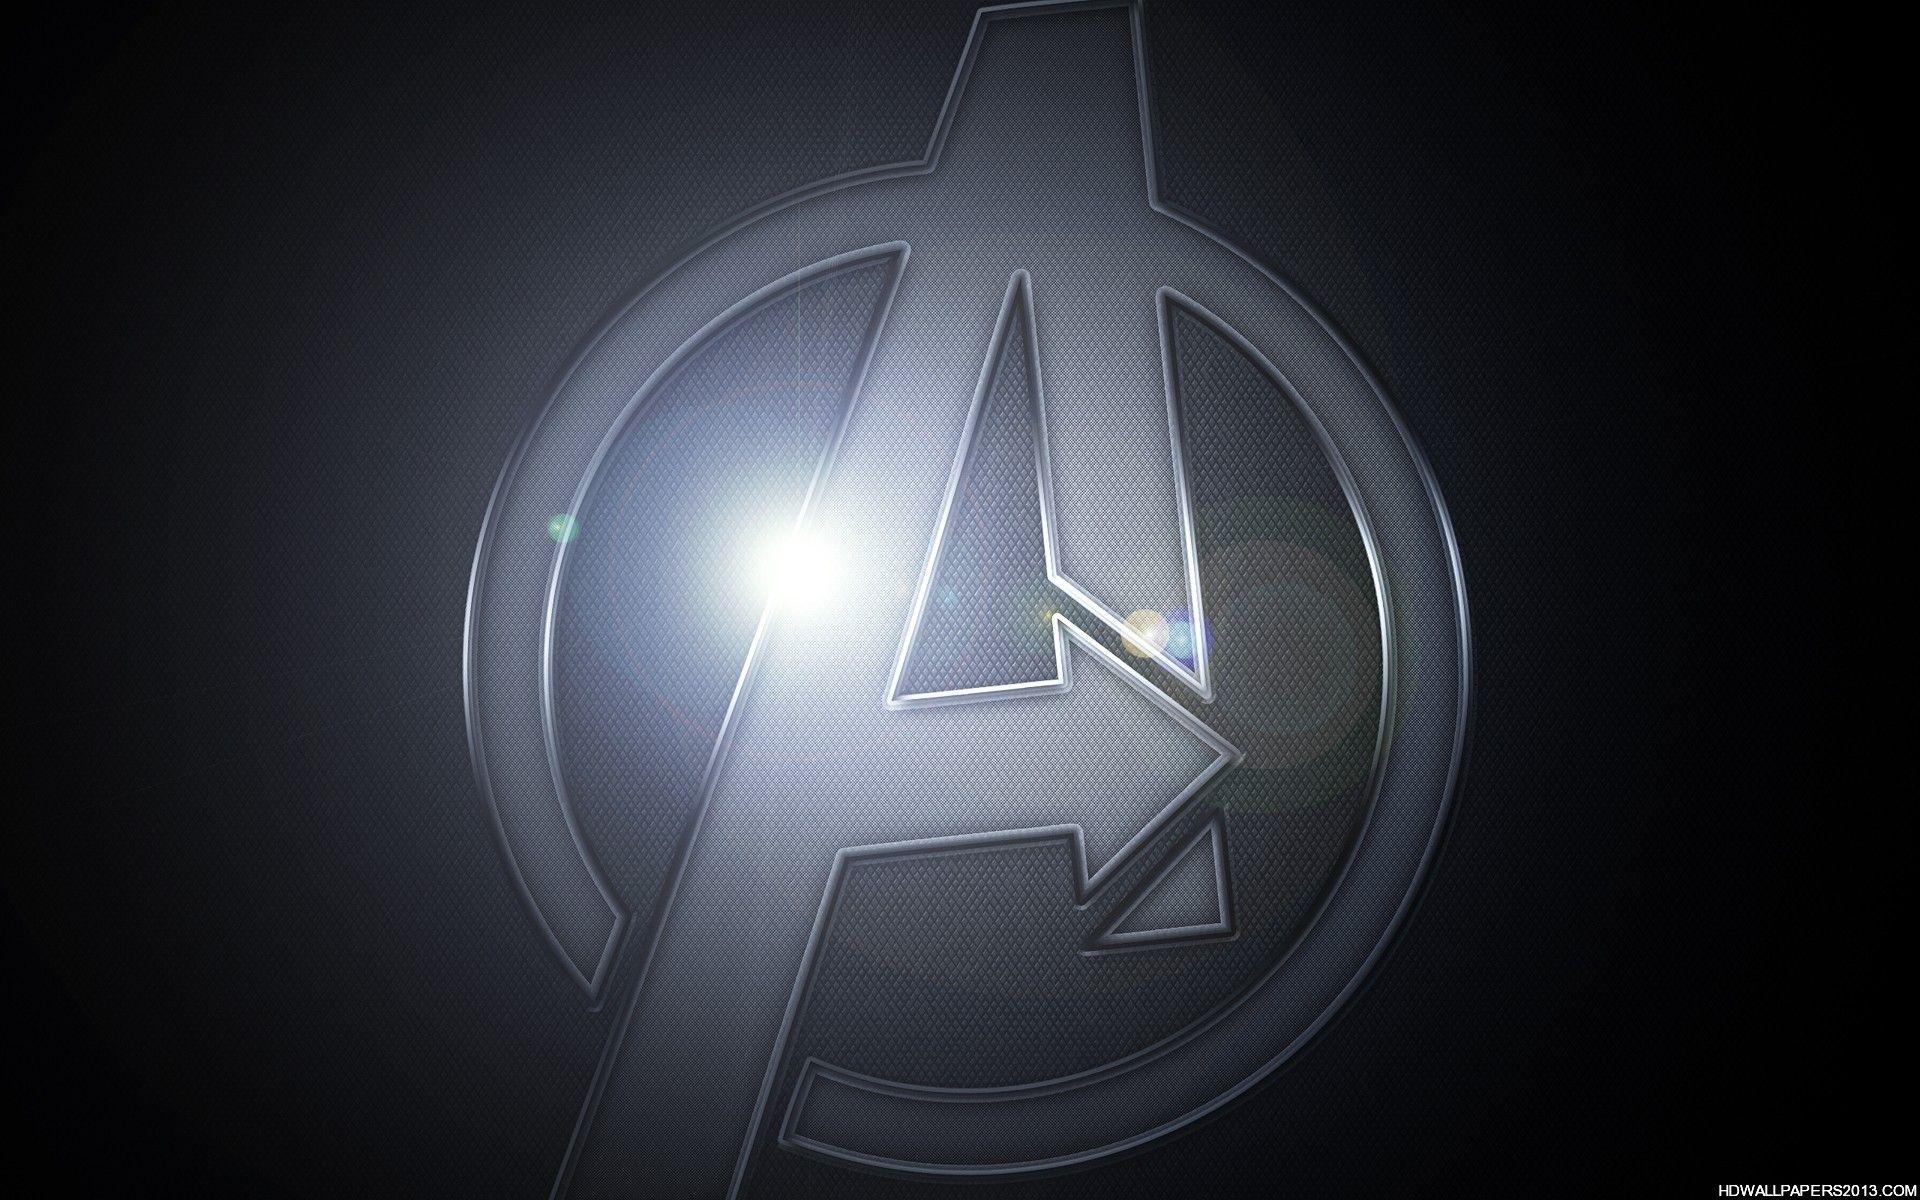 Big Avengers Logo Wallpaper. High Definition Wallpaper, High